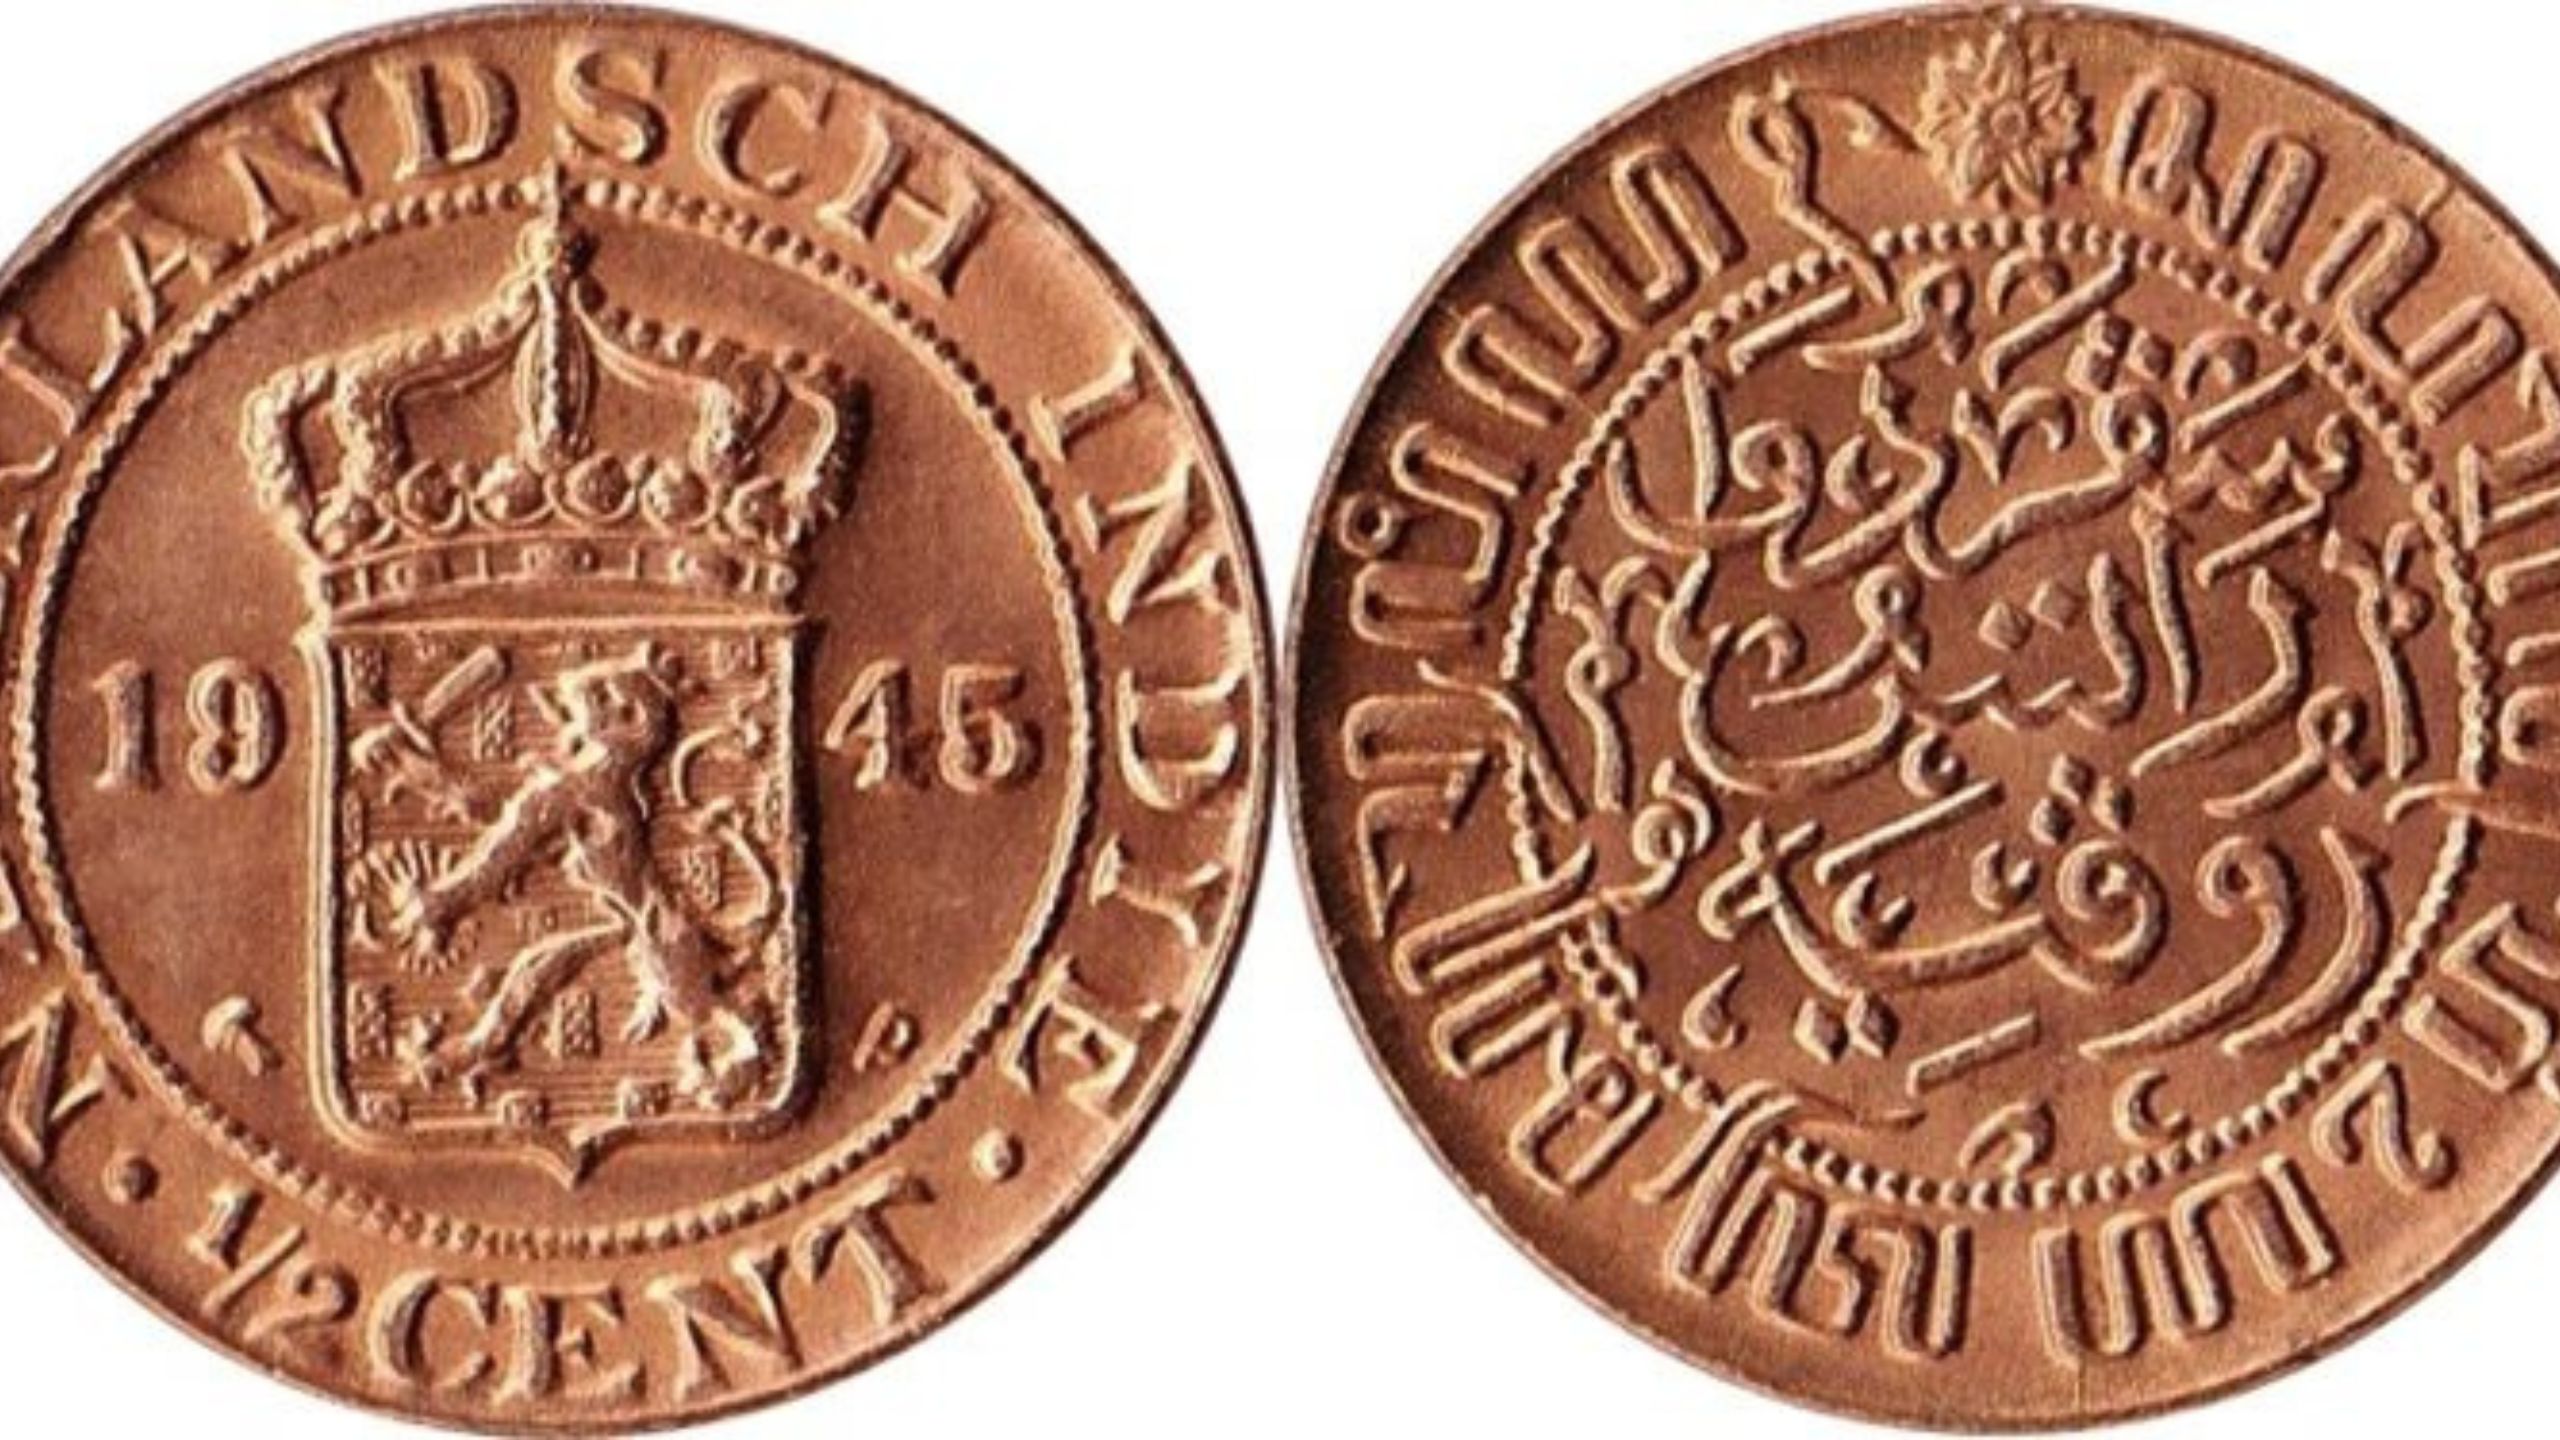 Koin Kuno Naderlandsch Indie 1945, Bisa Bayar Kontrak Bedeng Satu Tahun, Simak Harga Nya Disini